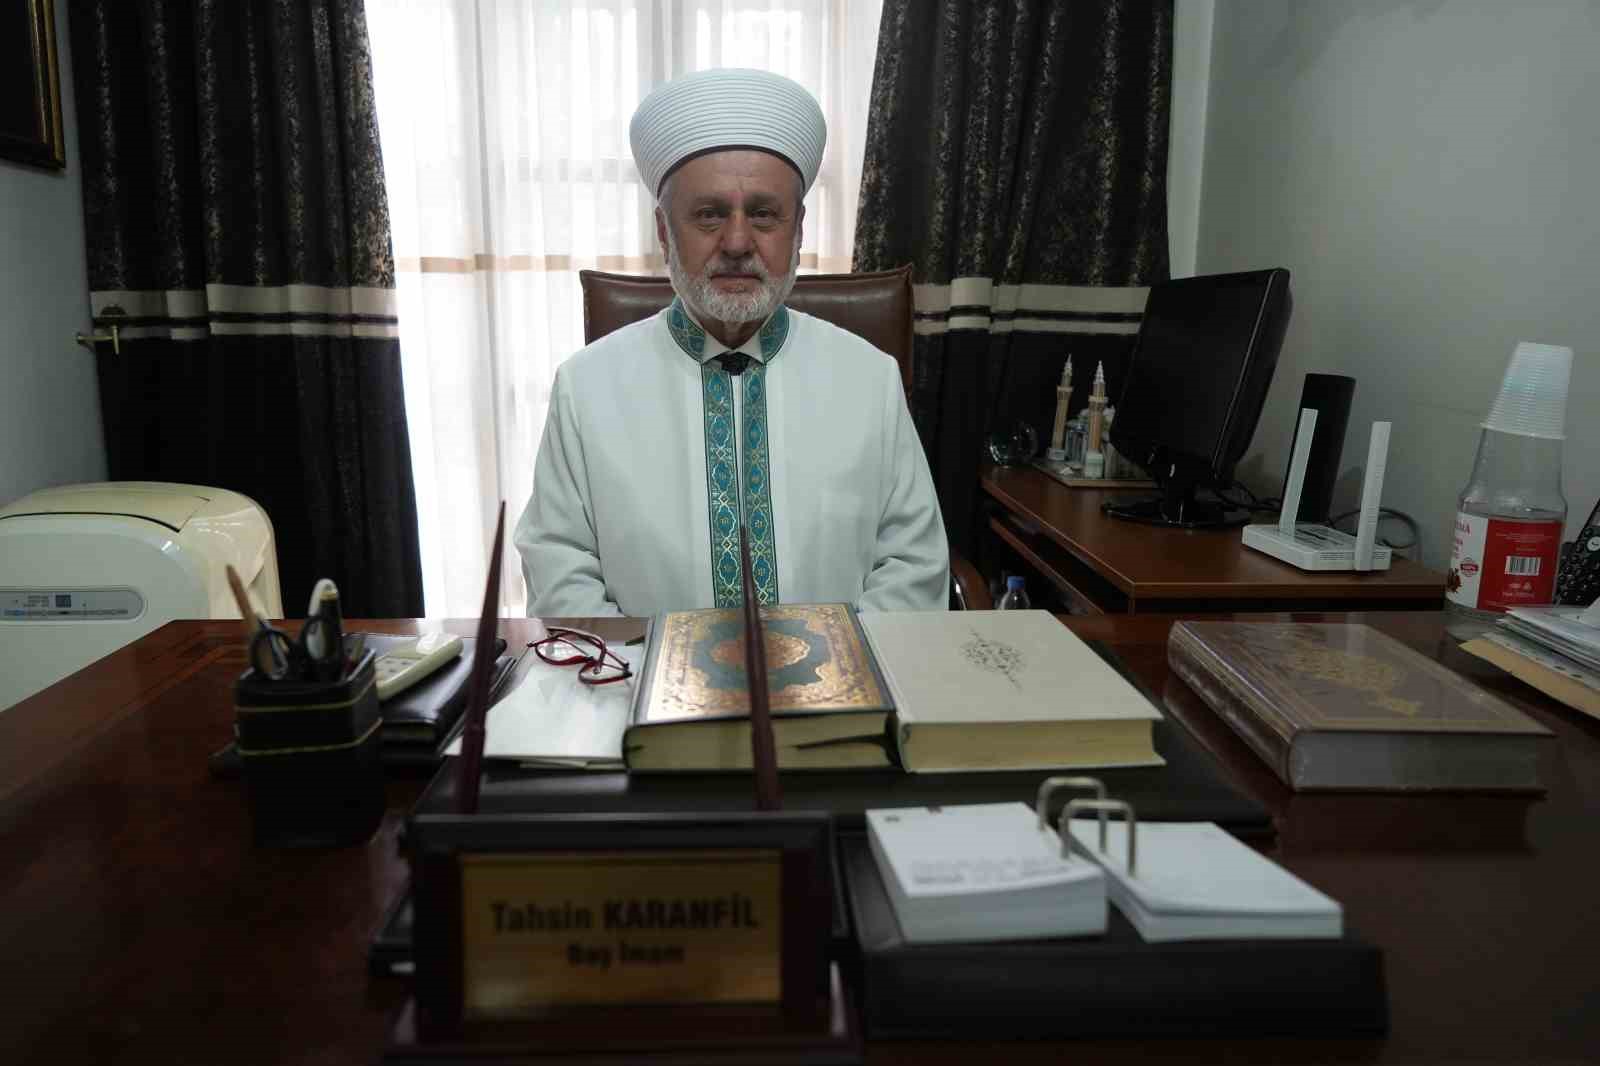 Ulu Cami’nin 25 senelik baş imamı emekli oldu
